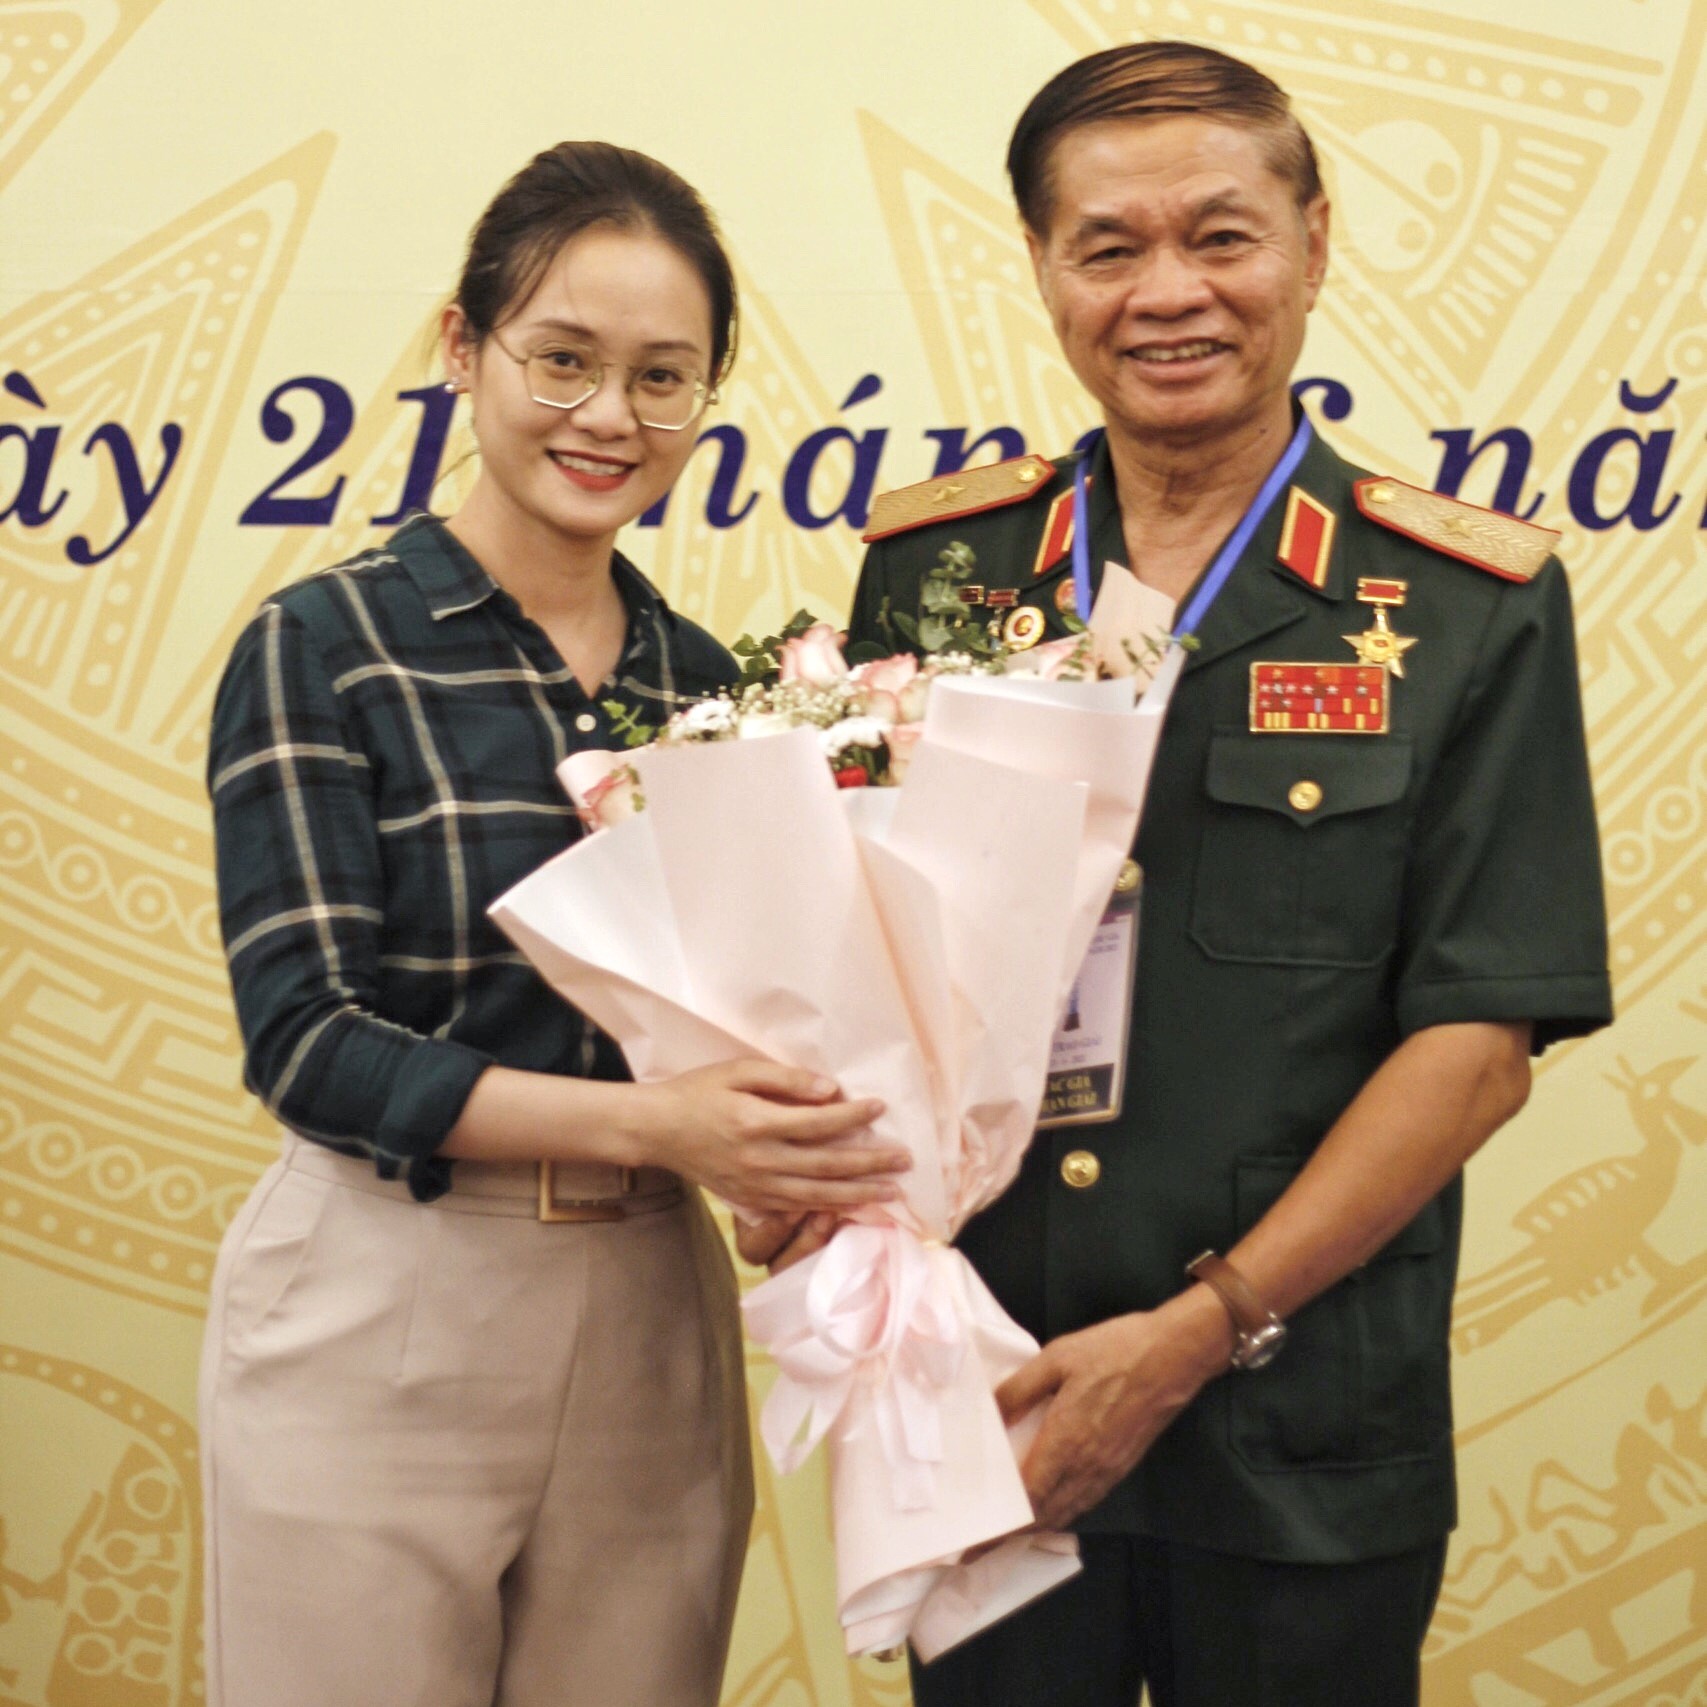 Thiếu tướng Hoàng Kiền: “Nhận giải Báo chí Quốc gia là niềm tự hào cho toàn thể đội ngũ cán bộ chiến sĩ Trường Sa” - 3